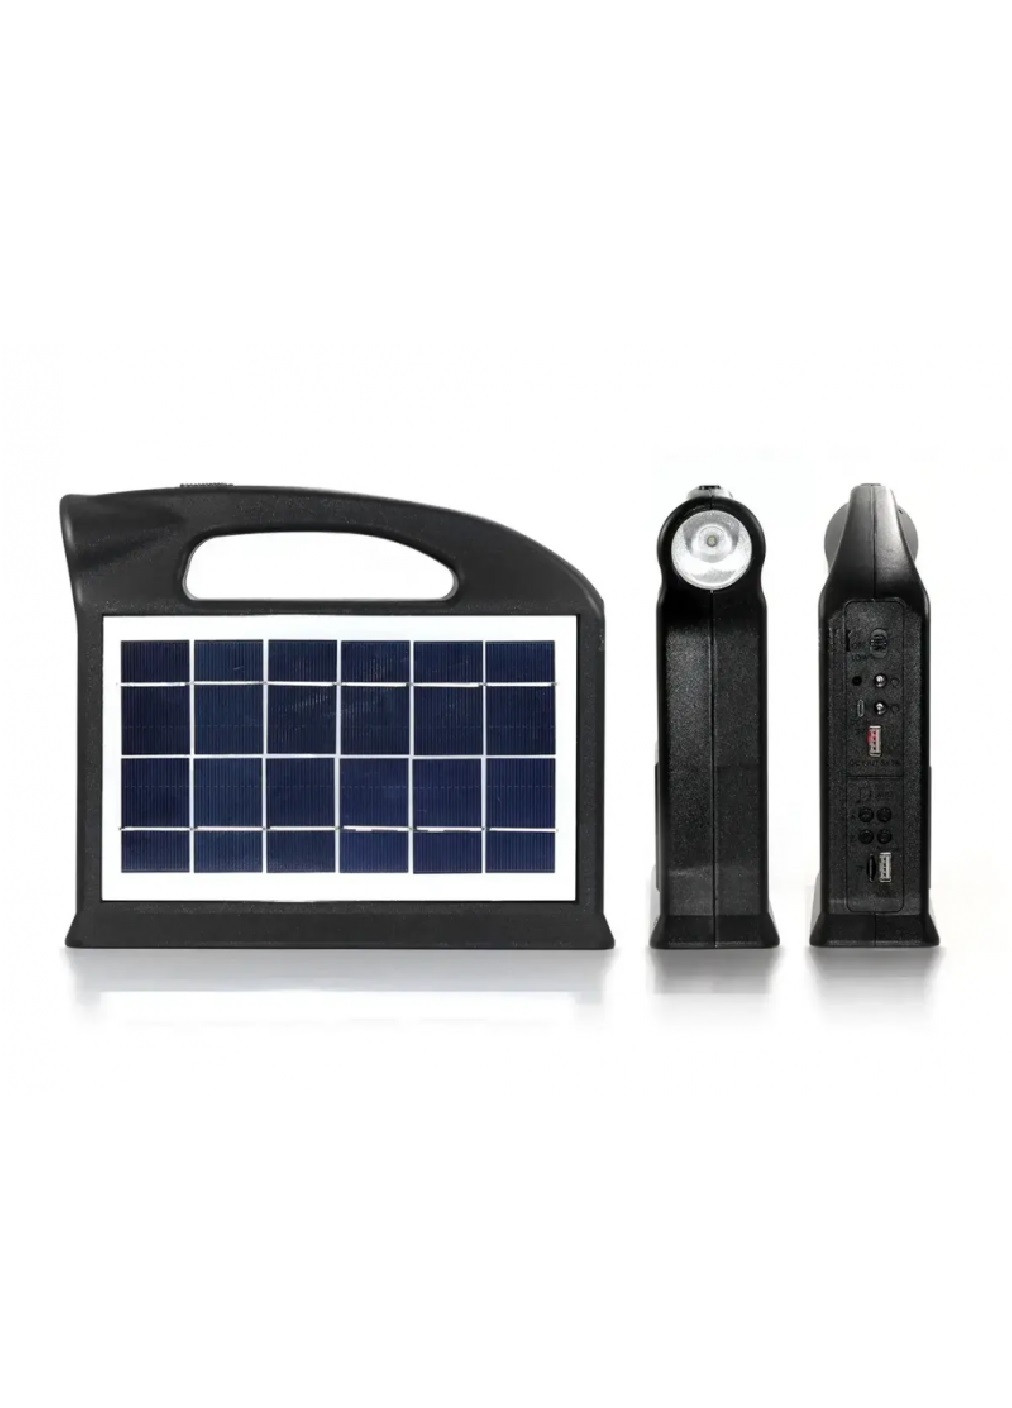 Фонарь портативный на солнечной батарее c Power bank FM радио солнечная зарядная станция 2 лампы в комплекте (474010-Prob) Unbranded (257155266)